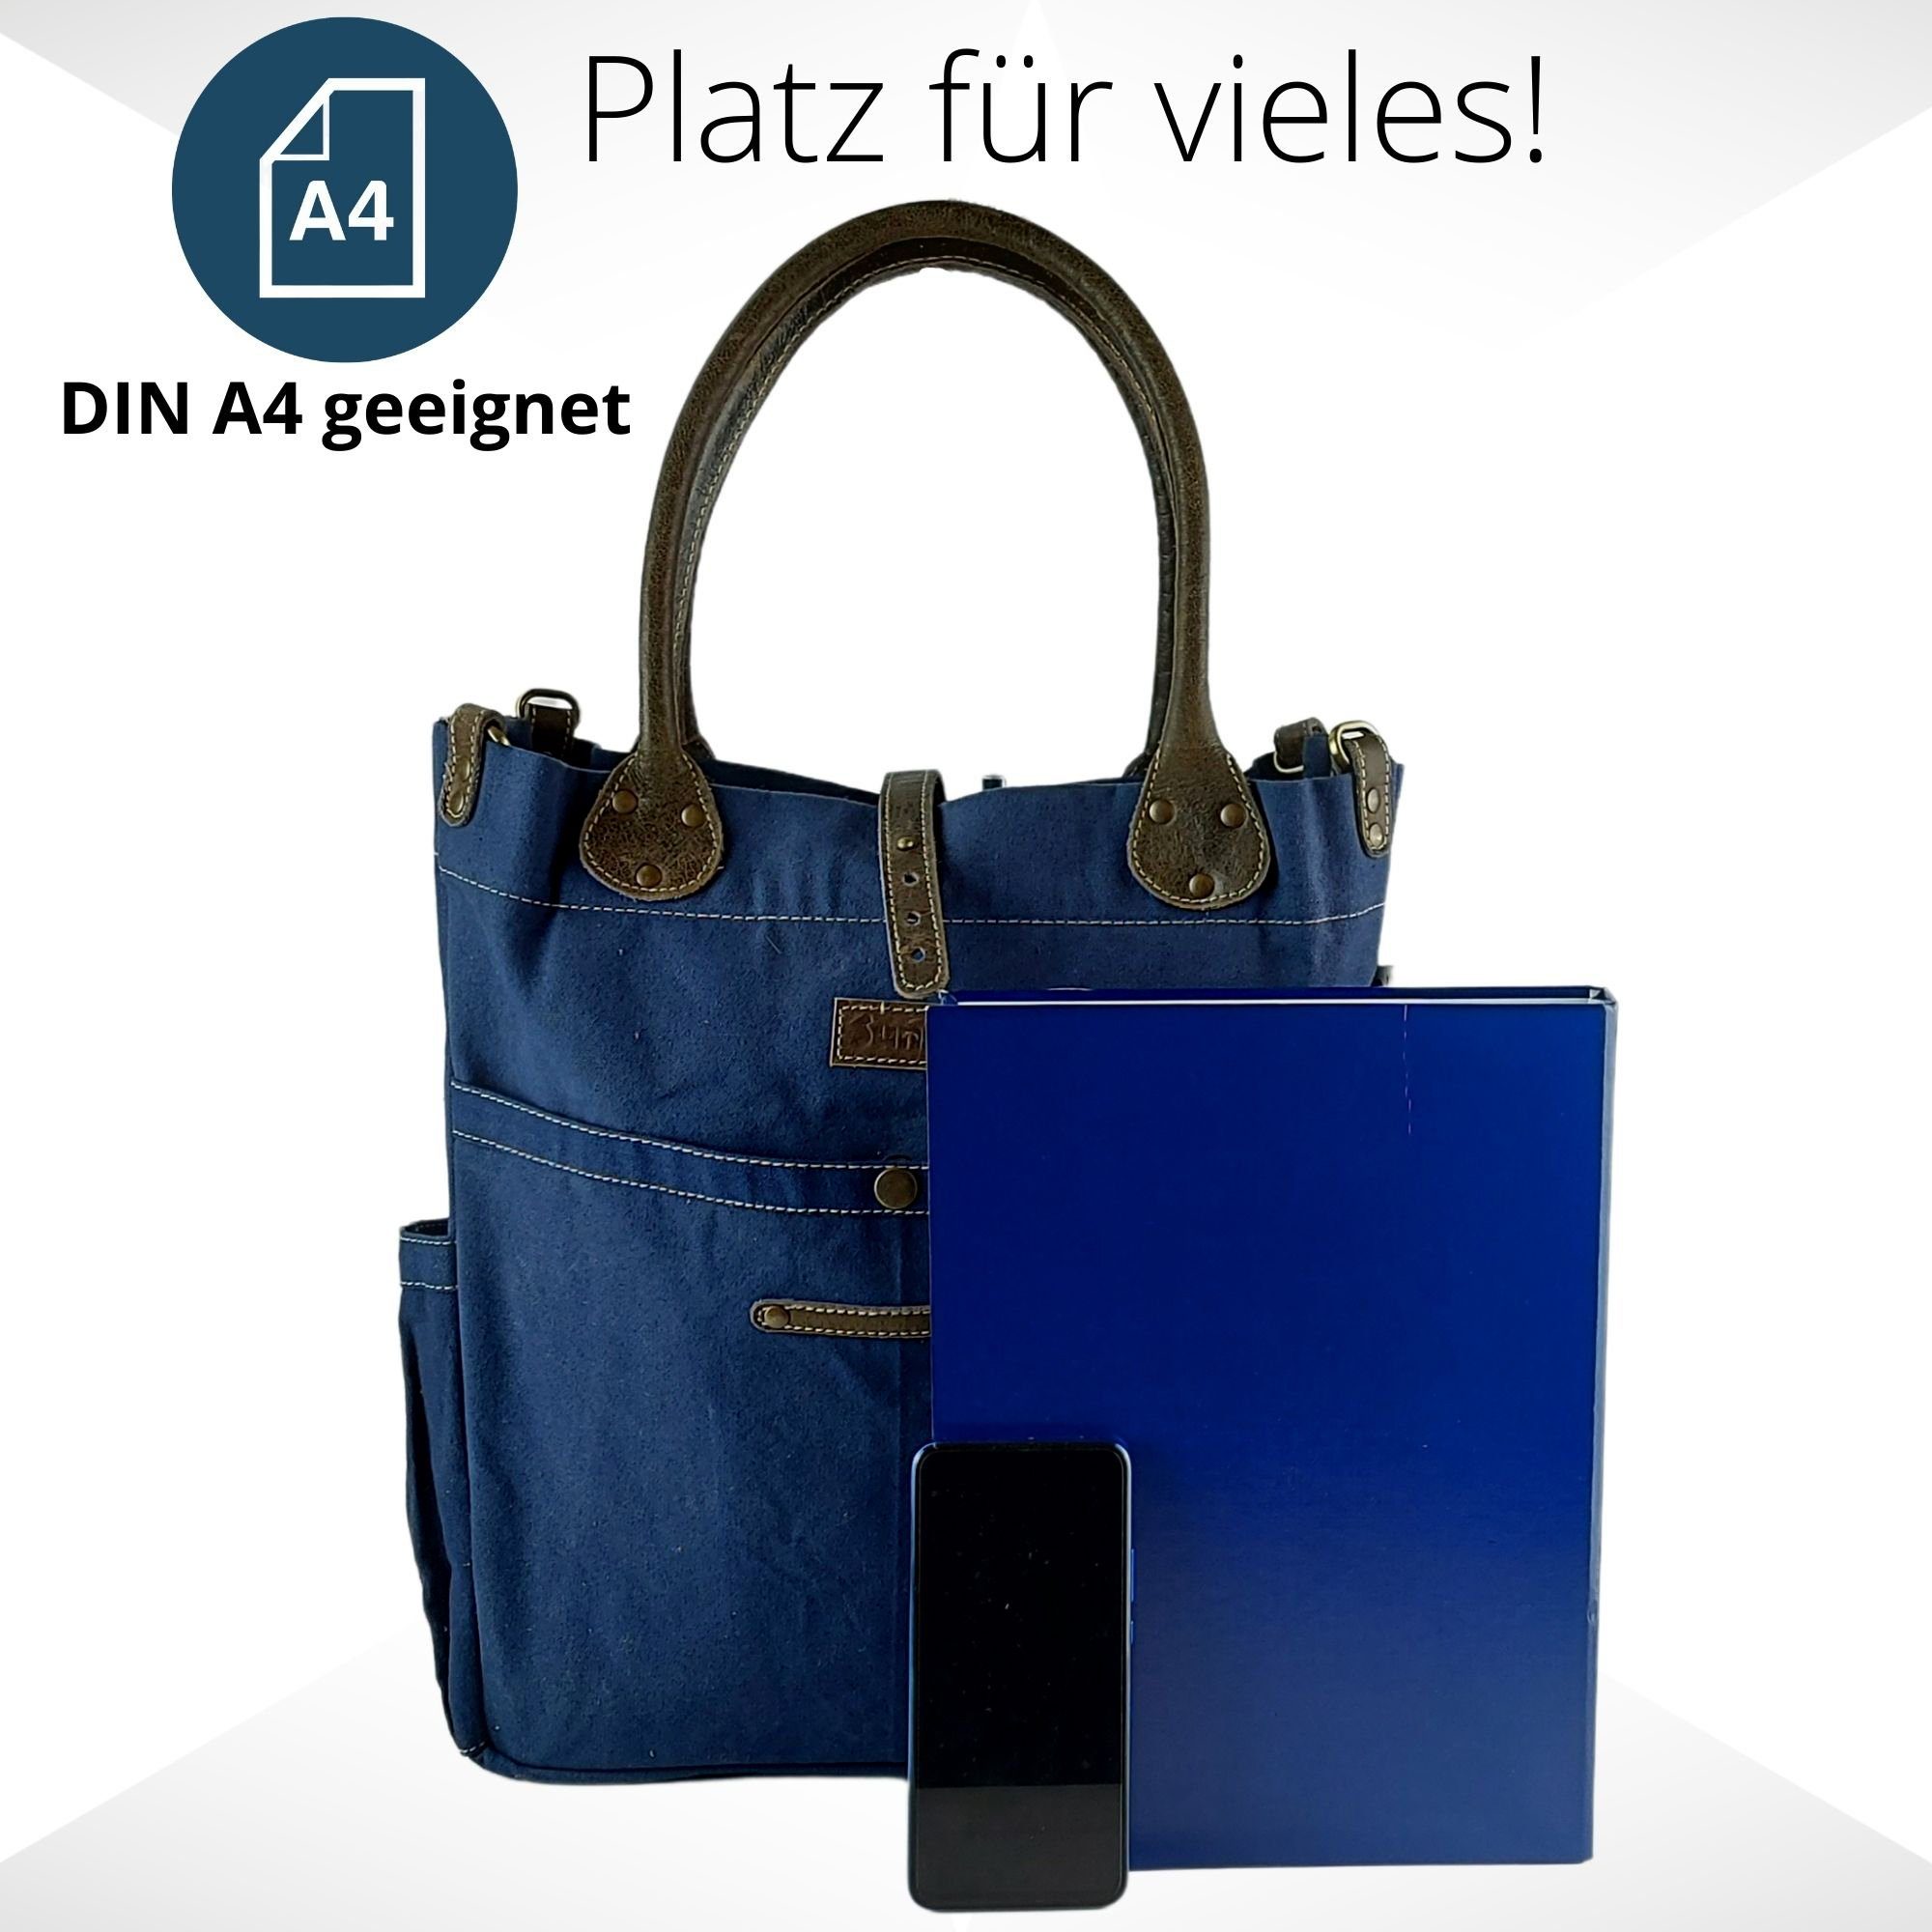 Sunsa Handtasche Damen Handtasche, Große Tasche Blau schlicht Dunkel Handgriff Leder Canvas mit umhänge dazu verstellbare Henkel, Schultertasche